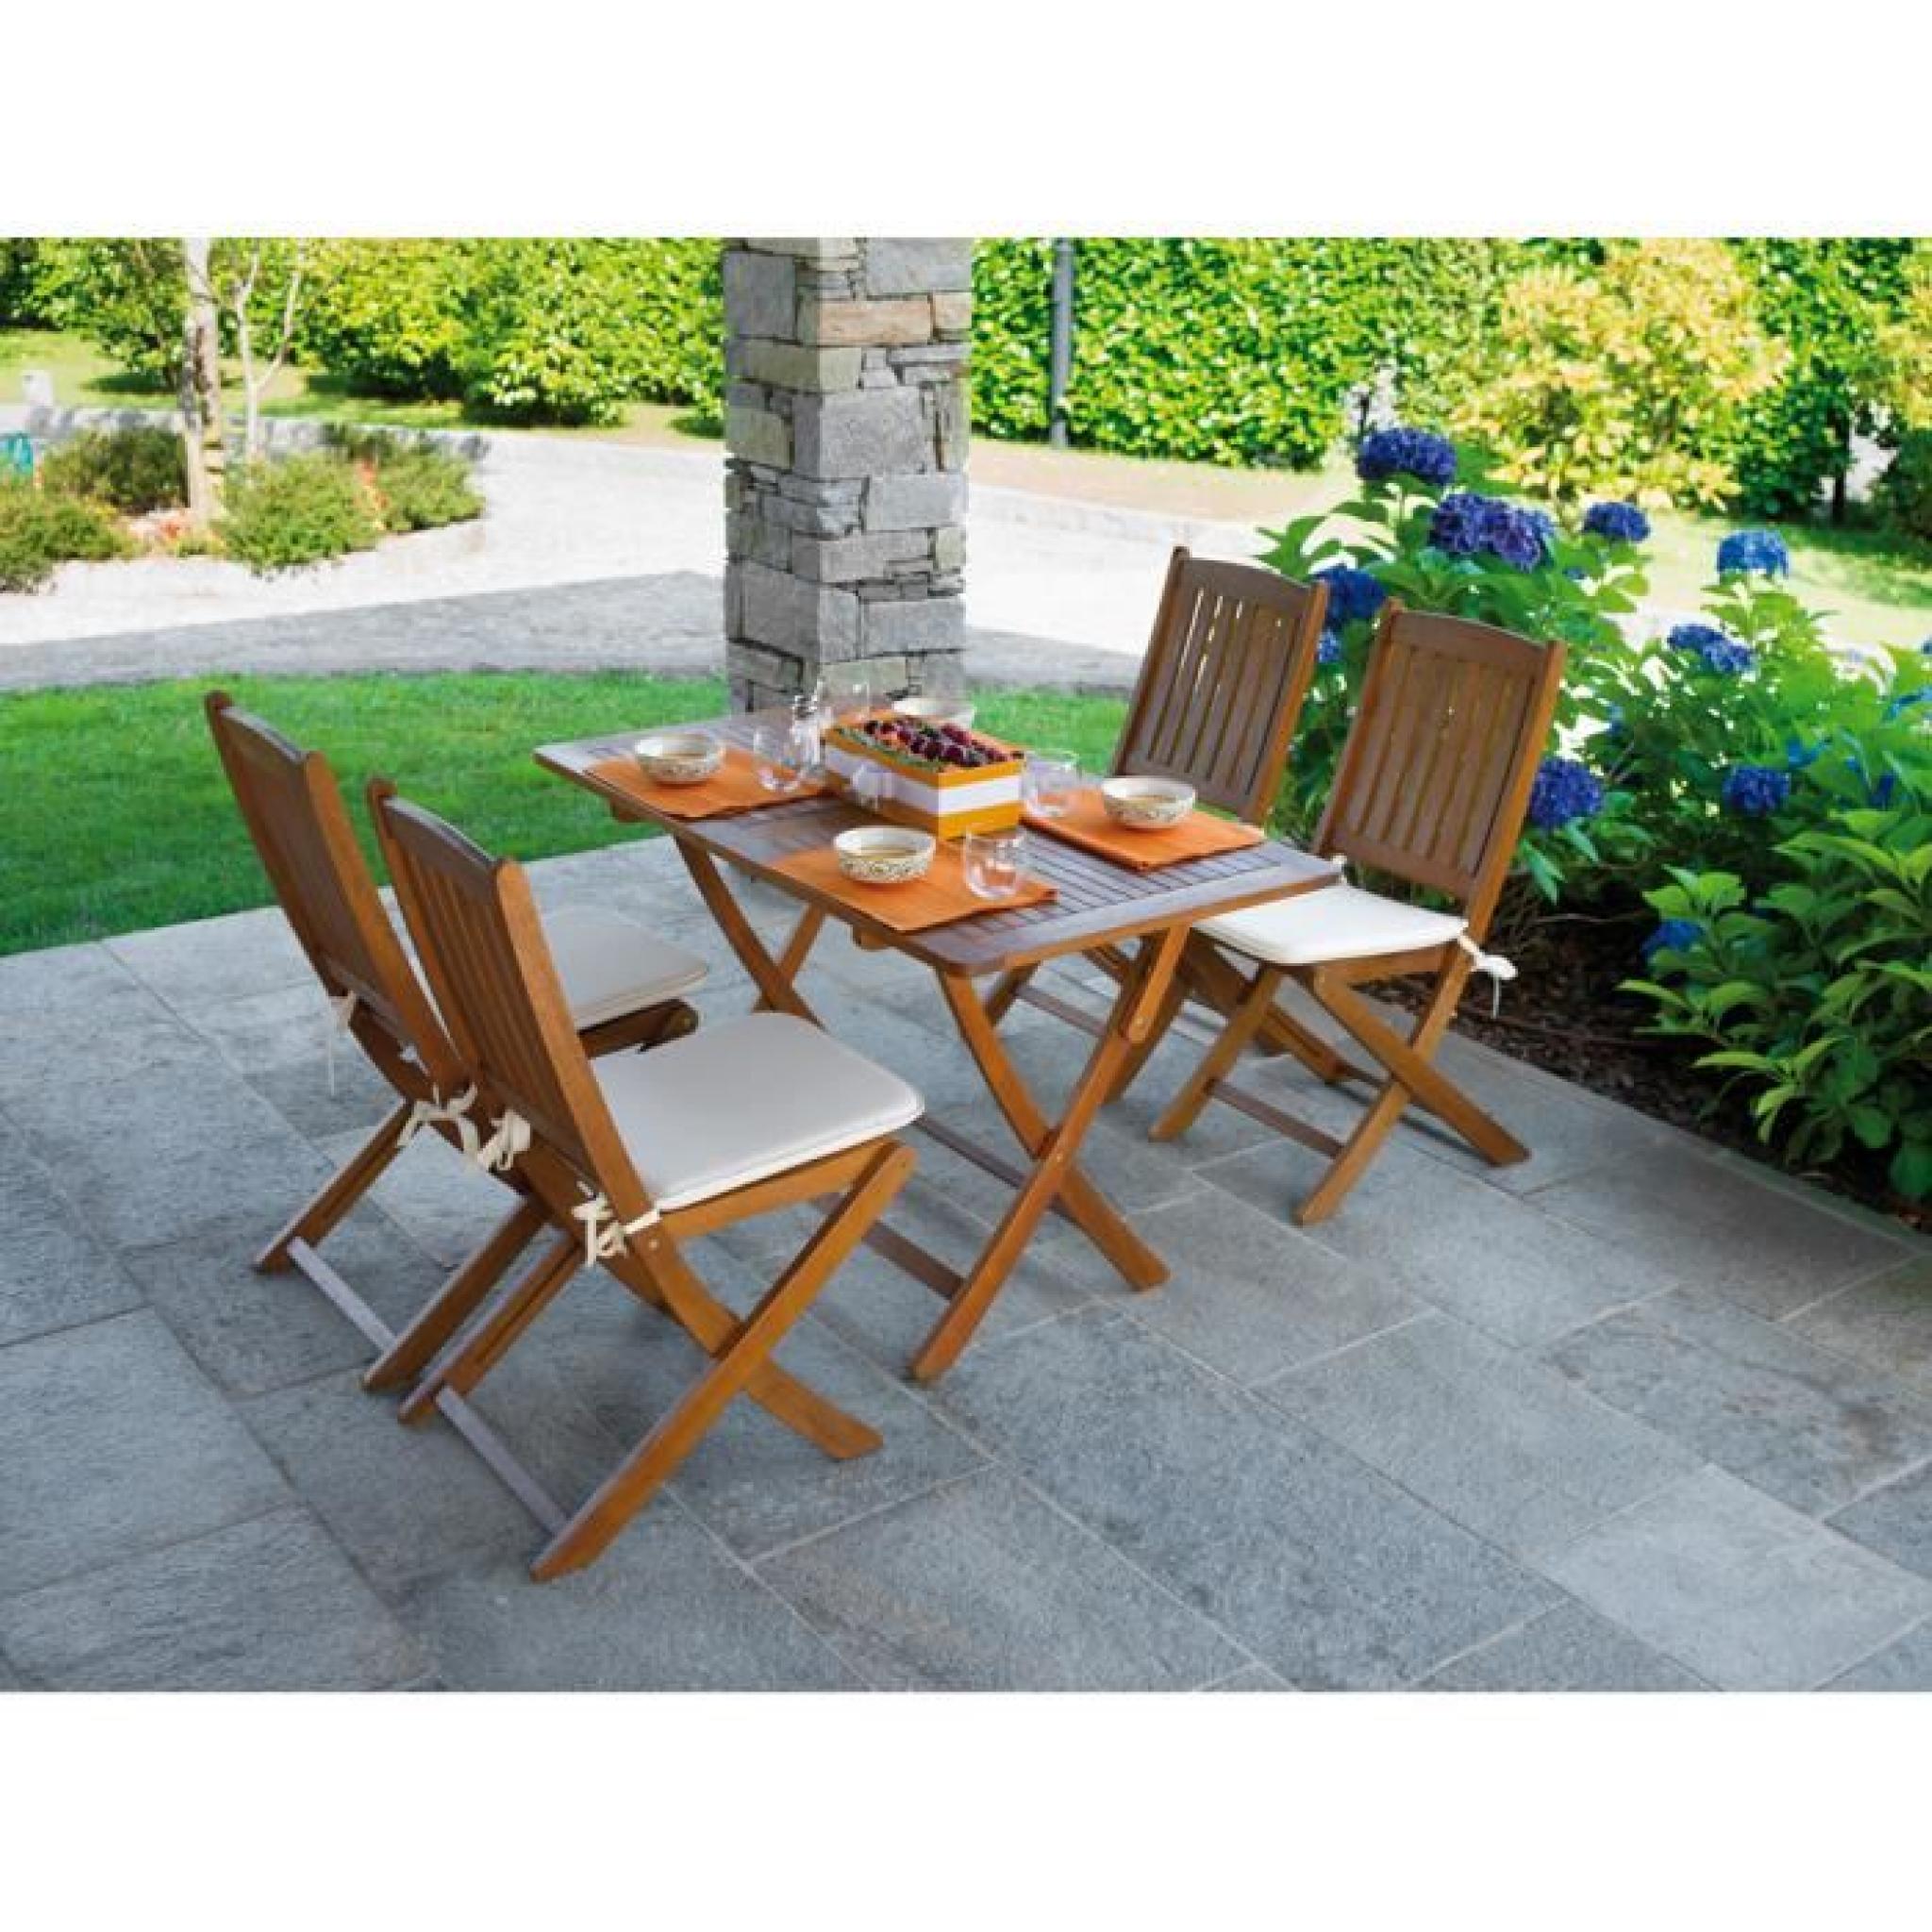 Chaise pliante pour jardin en bois exotique coloris bois naturel - Dim : H 92 x L 45 x P 58 cm pas cher